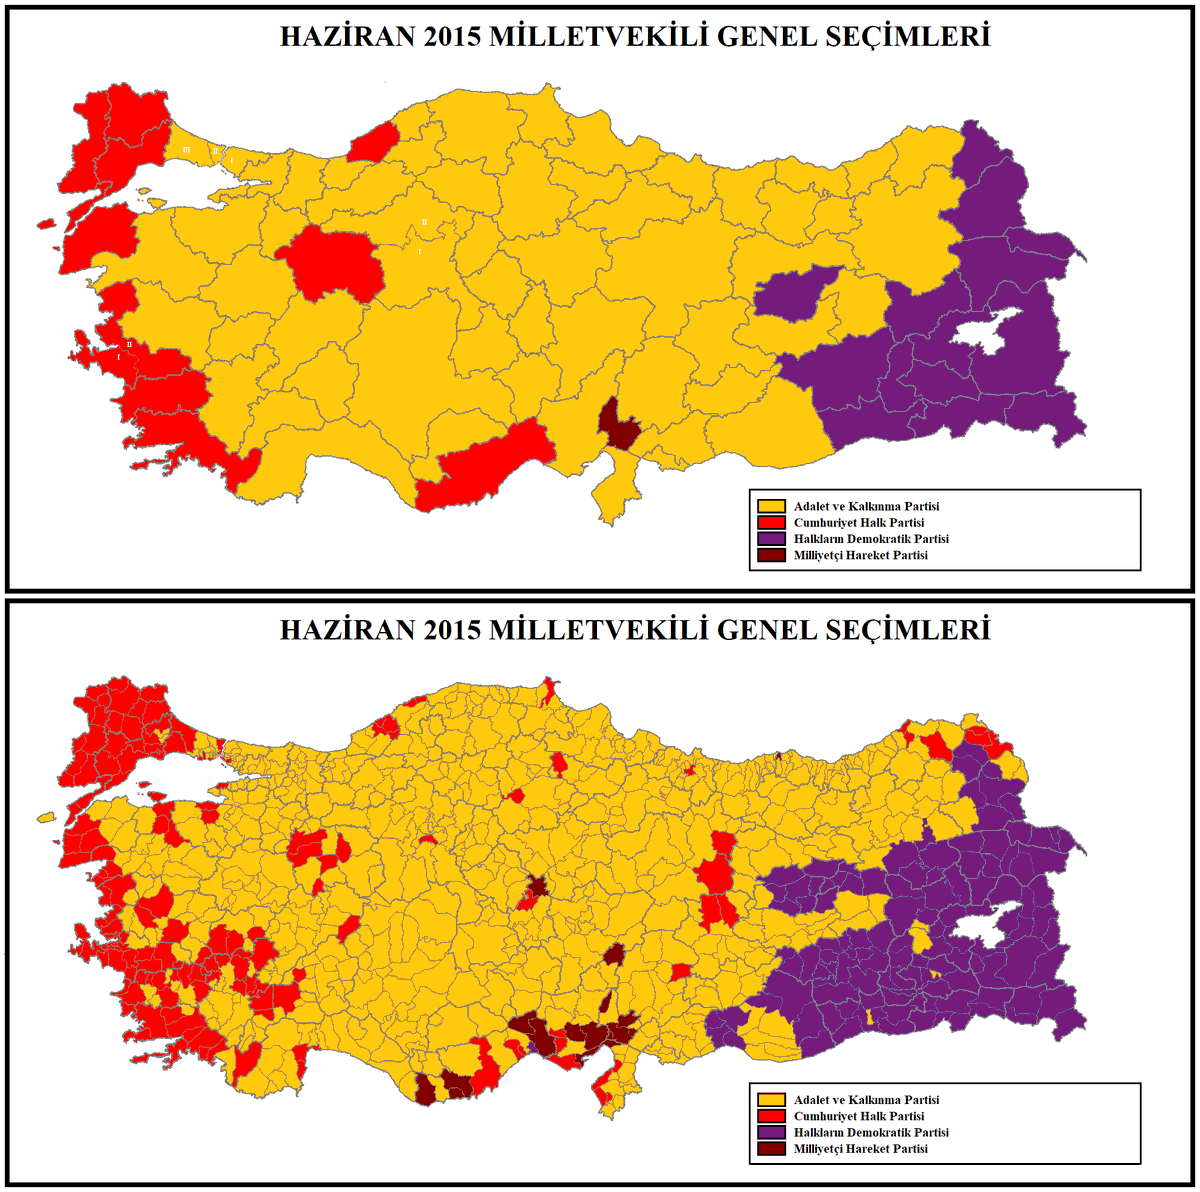 PKK-HDP-DEM’e karşı en büyük en tavizsiz desteği Kürt ve Zazalar vermiştir.

Ayrıca onlar Türk'ün ne kardeşi ne dostudur. Aksine mazisiz ve nankör yığınlardır.